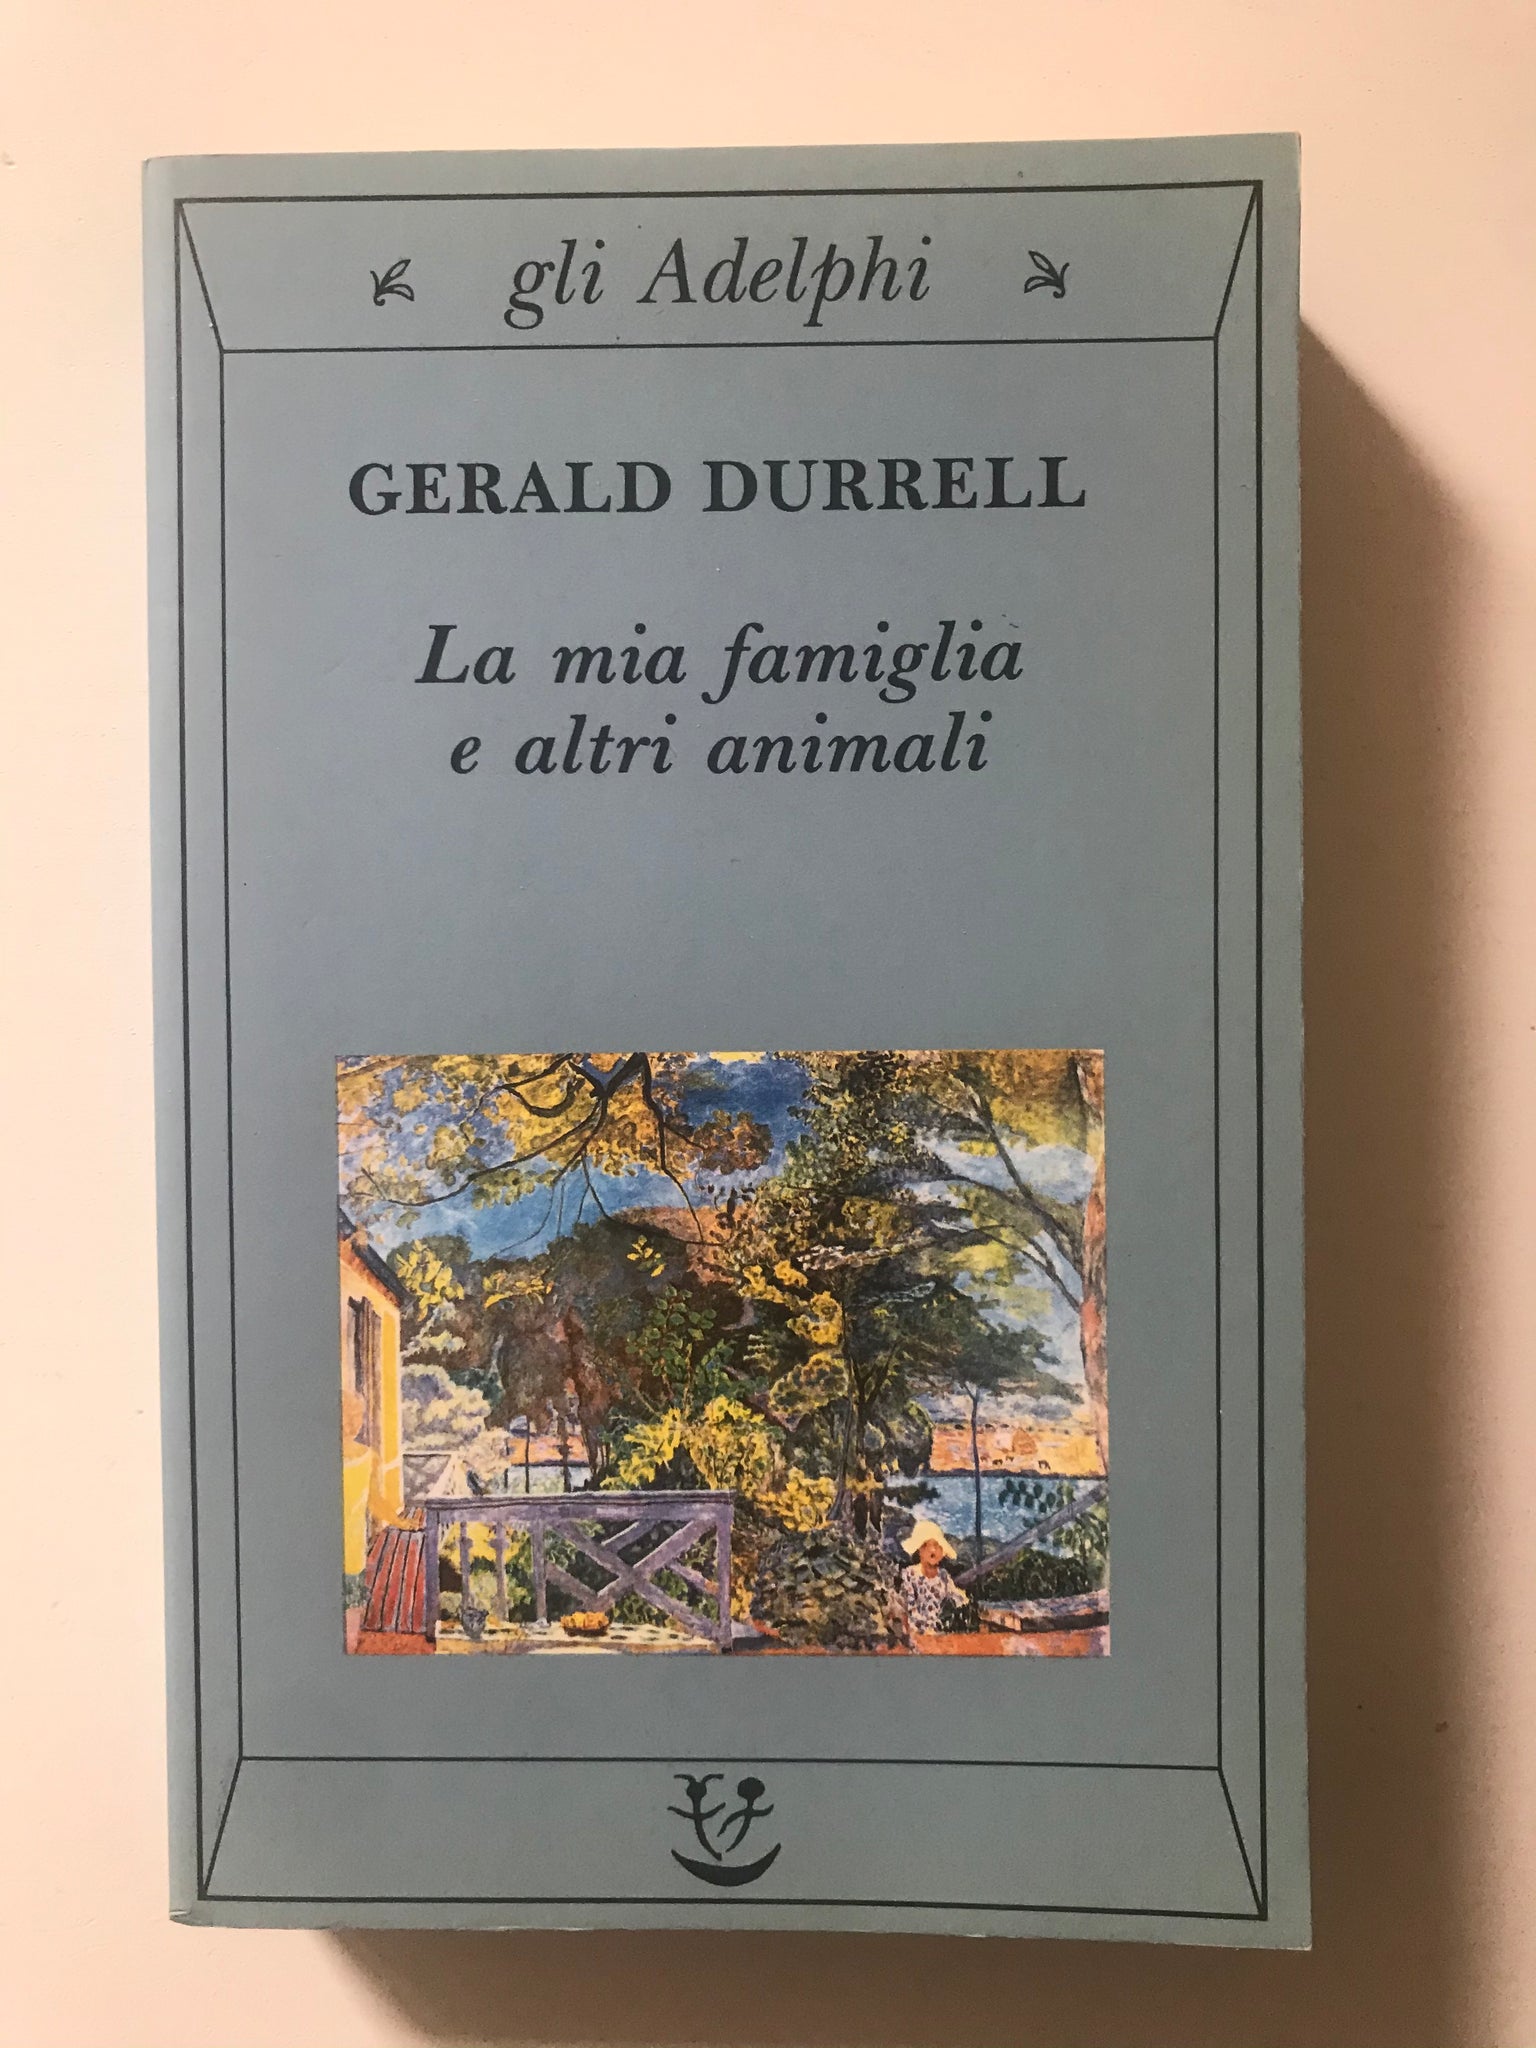 Gerald Durrell - La mia famiglia e altri animali – piudiunlibro